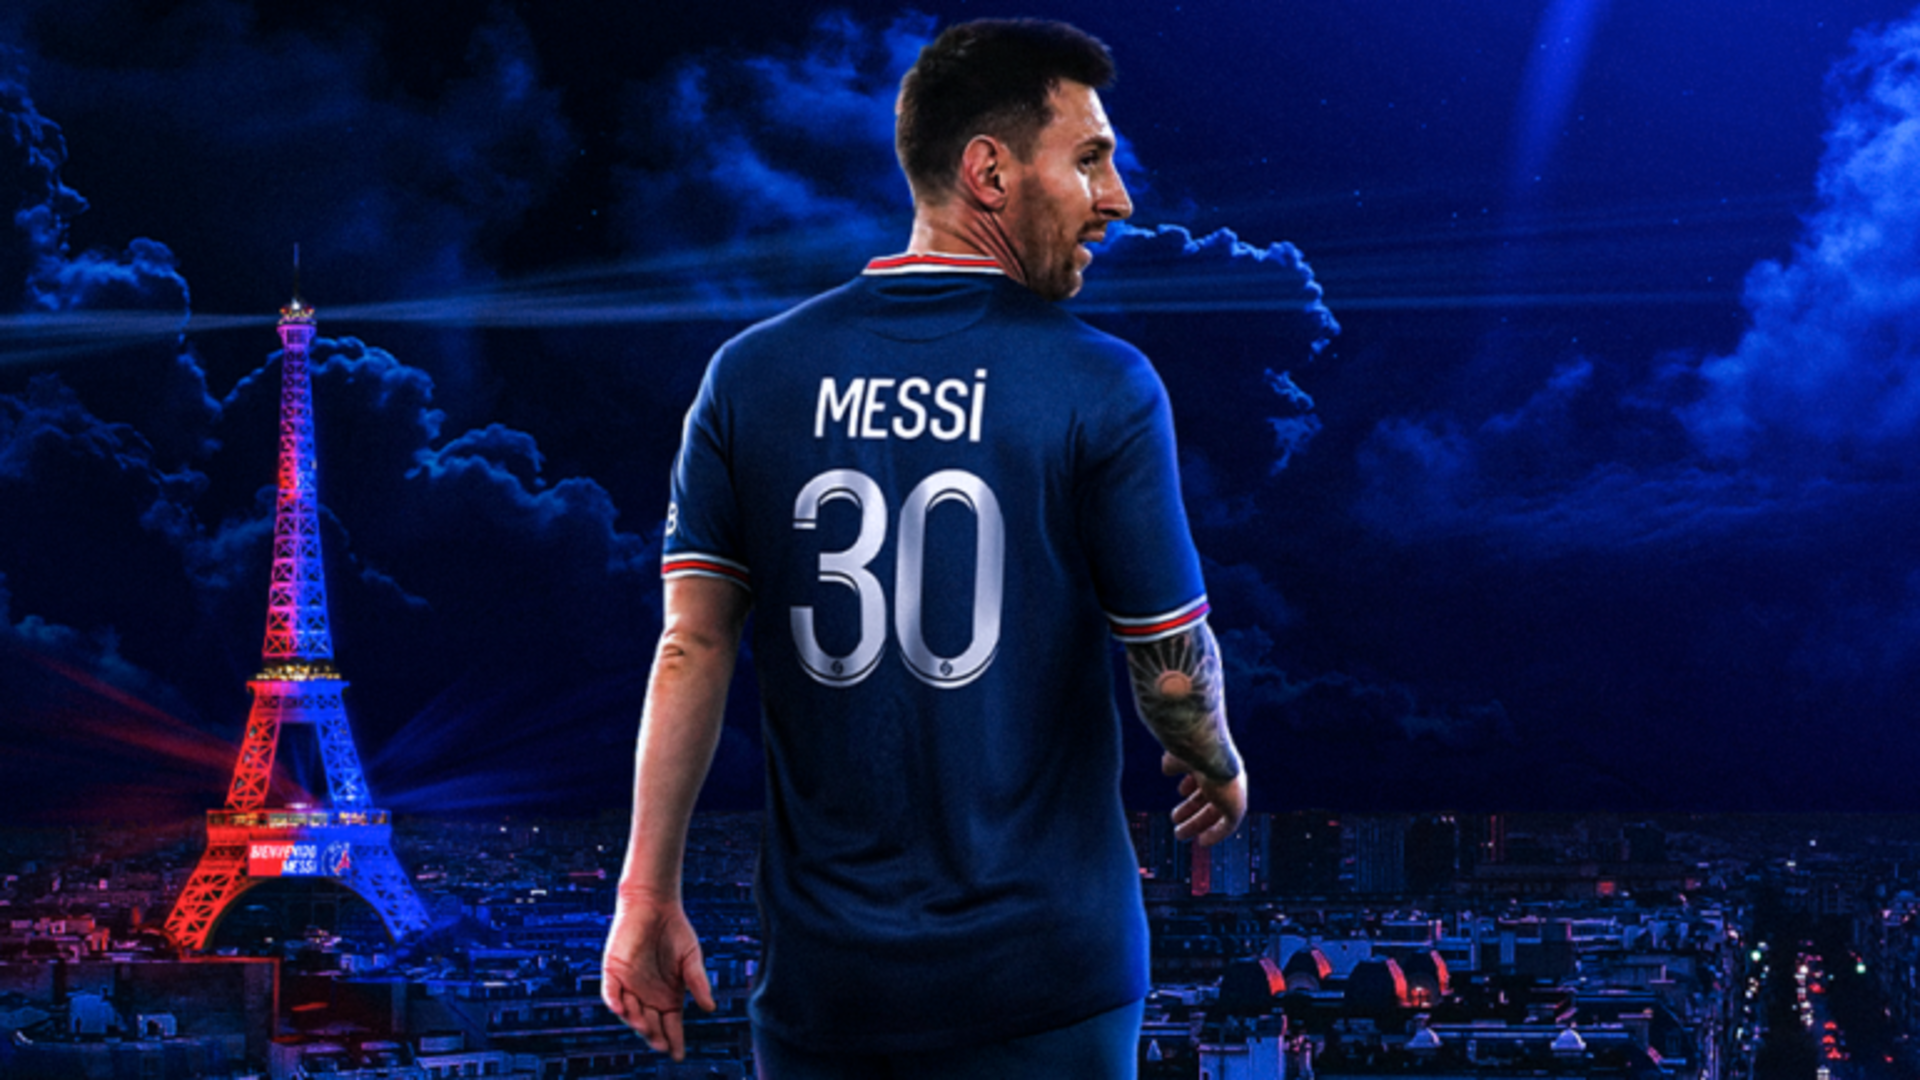 Hình nền Messi PSG sẽ khiến bạn trầm trồ với sự cân bằng và tài năng của siêu sao bóng đá này trong màu áo PSG. Nhấn vào hình ảnh ngay để xem chi tiết và cảm nhận sự phấn khích của việc chứng kiến những pha đi bóng xuất sắc của anh ta trên sân cỏ.